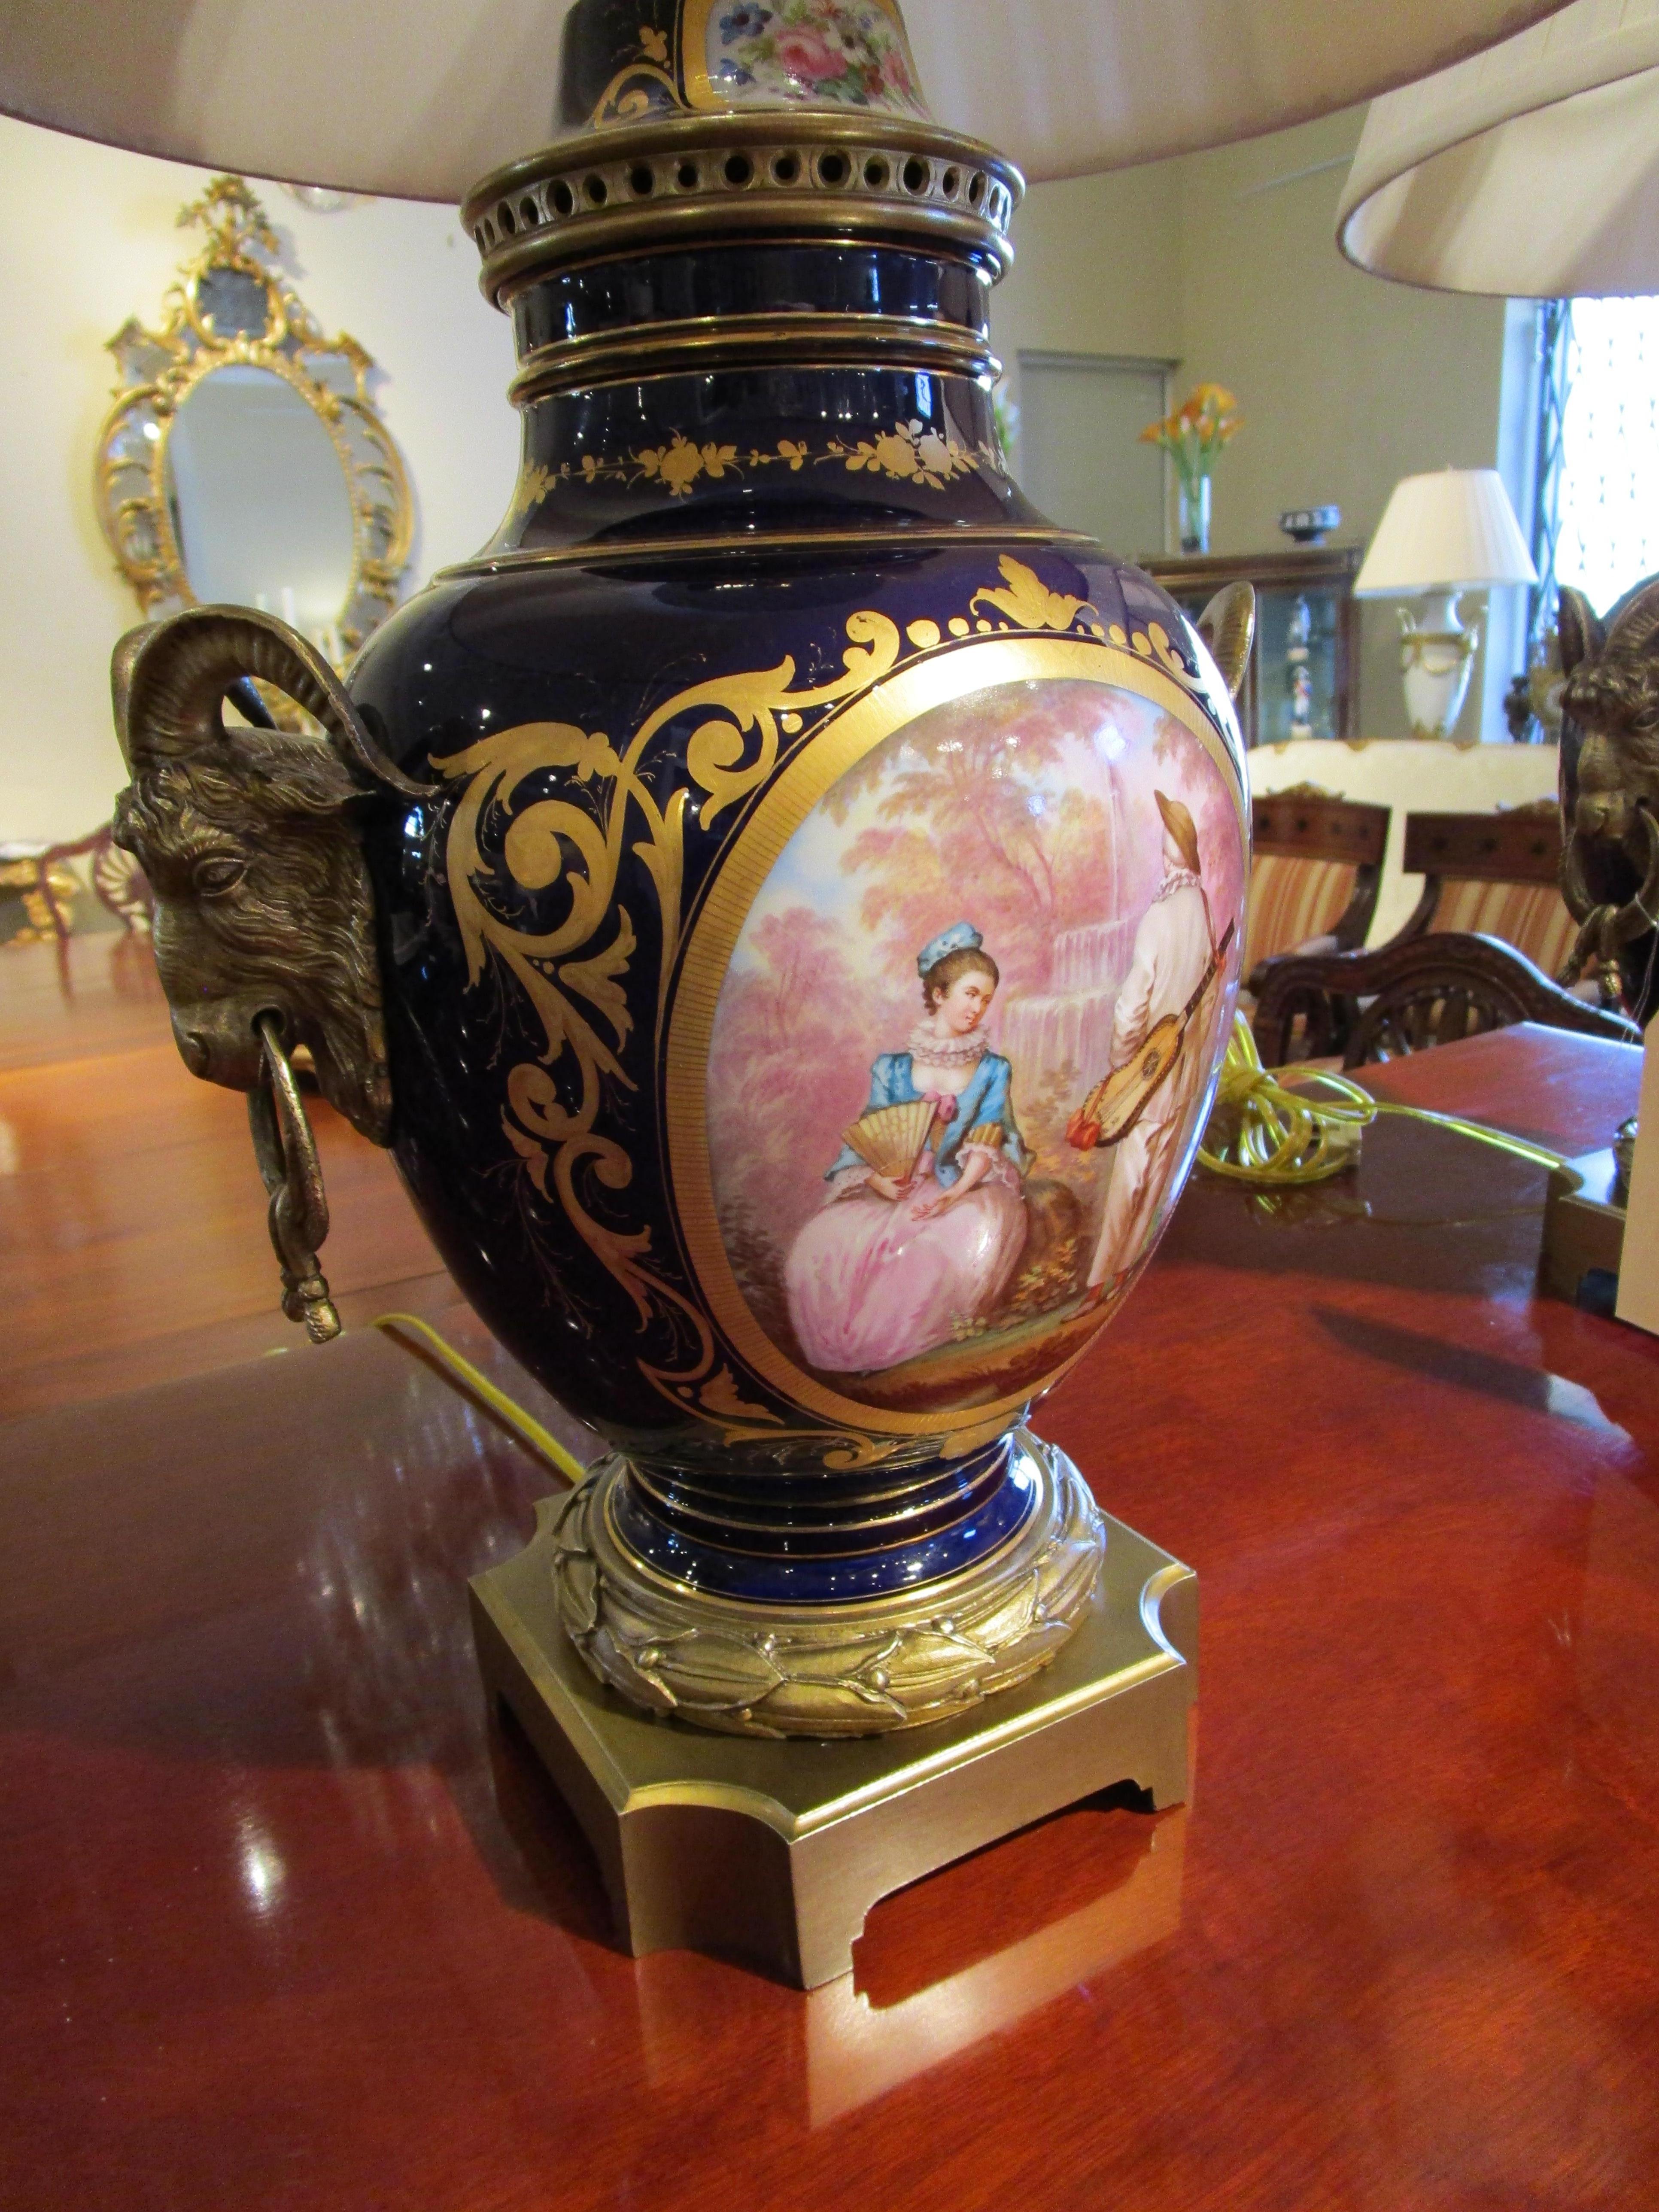 Paire d'urnes de style Louis XVI de la fin du XIXe siècle, en bronze doré et porcelaine de cobalt, peintes à la main et signées, avec montures en bronze doré à tête de bélier. Câblé et ombragé sur mesure.